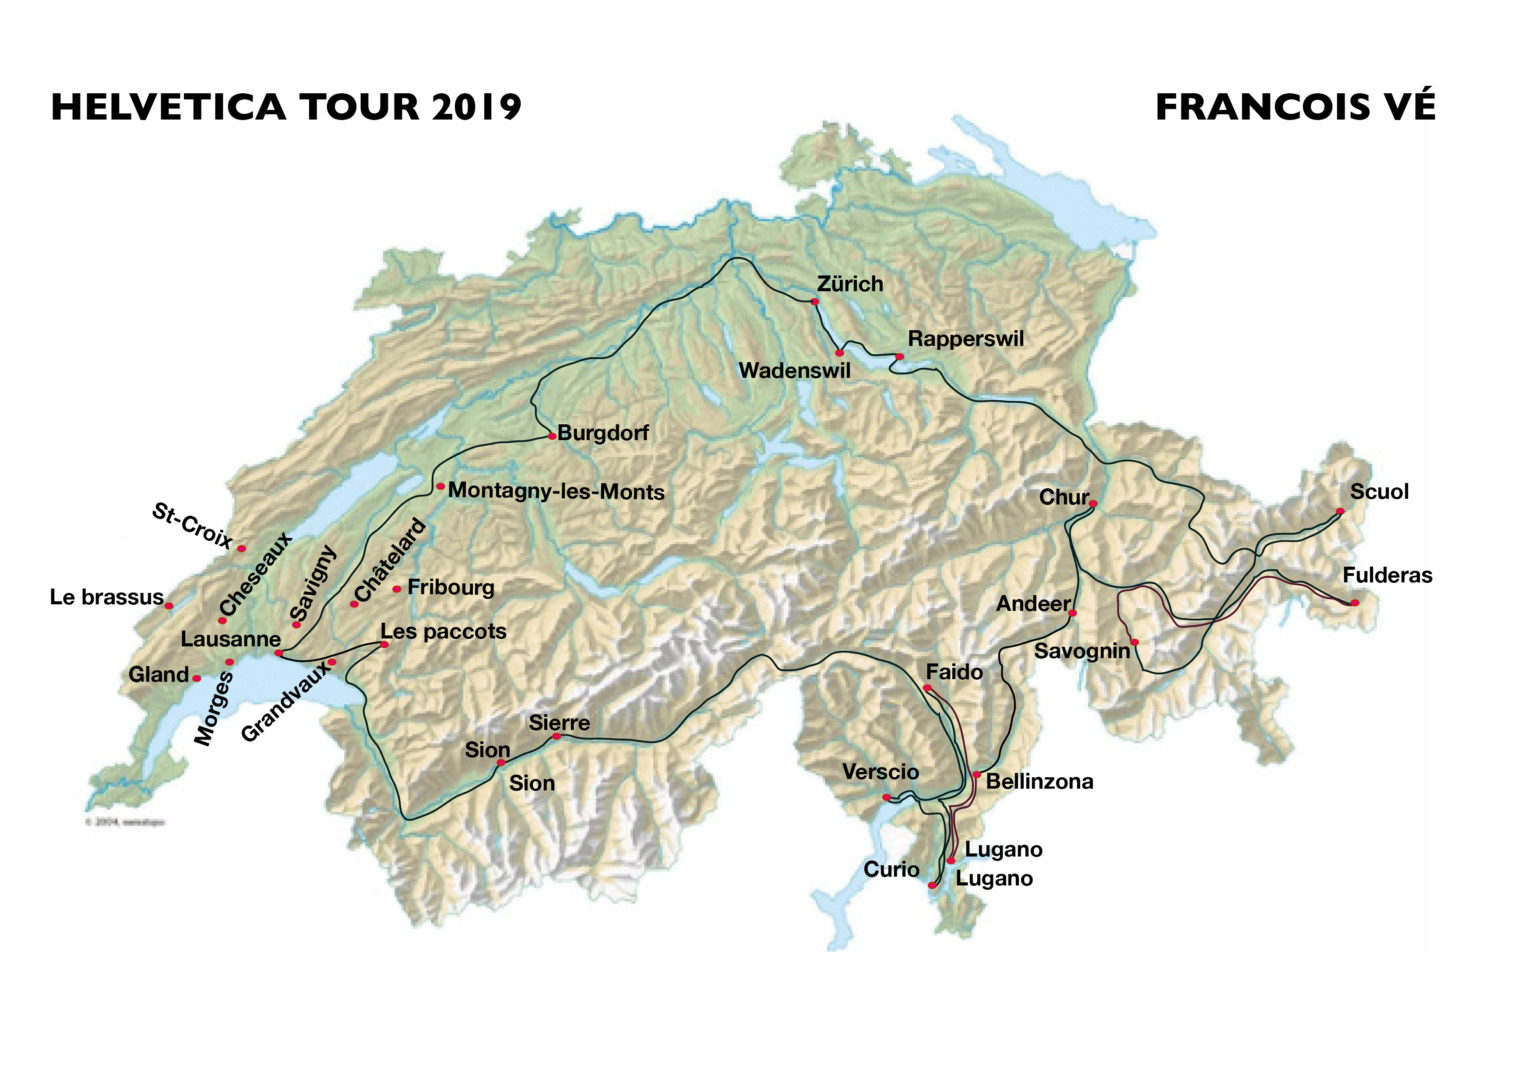 François Vé - Helvetica Tour 2019